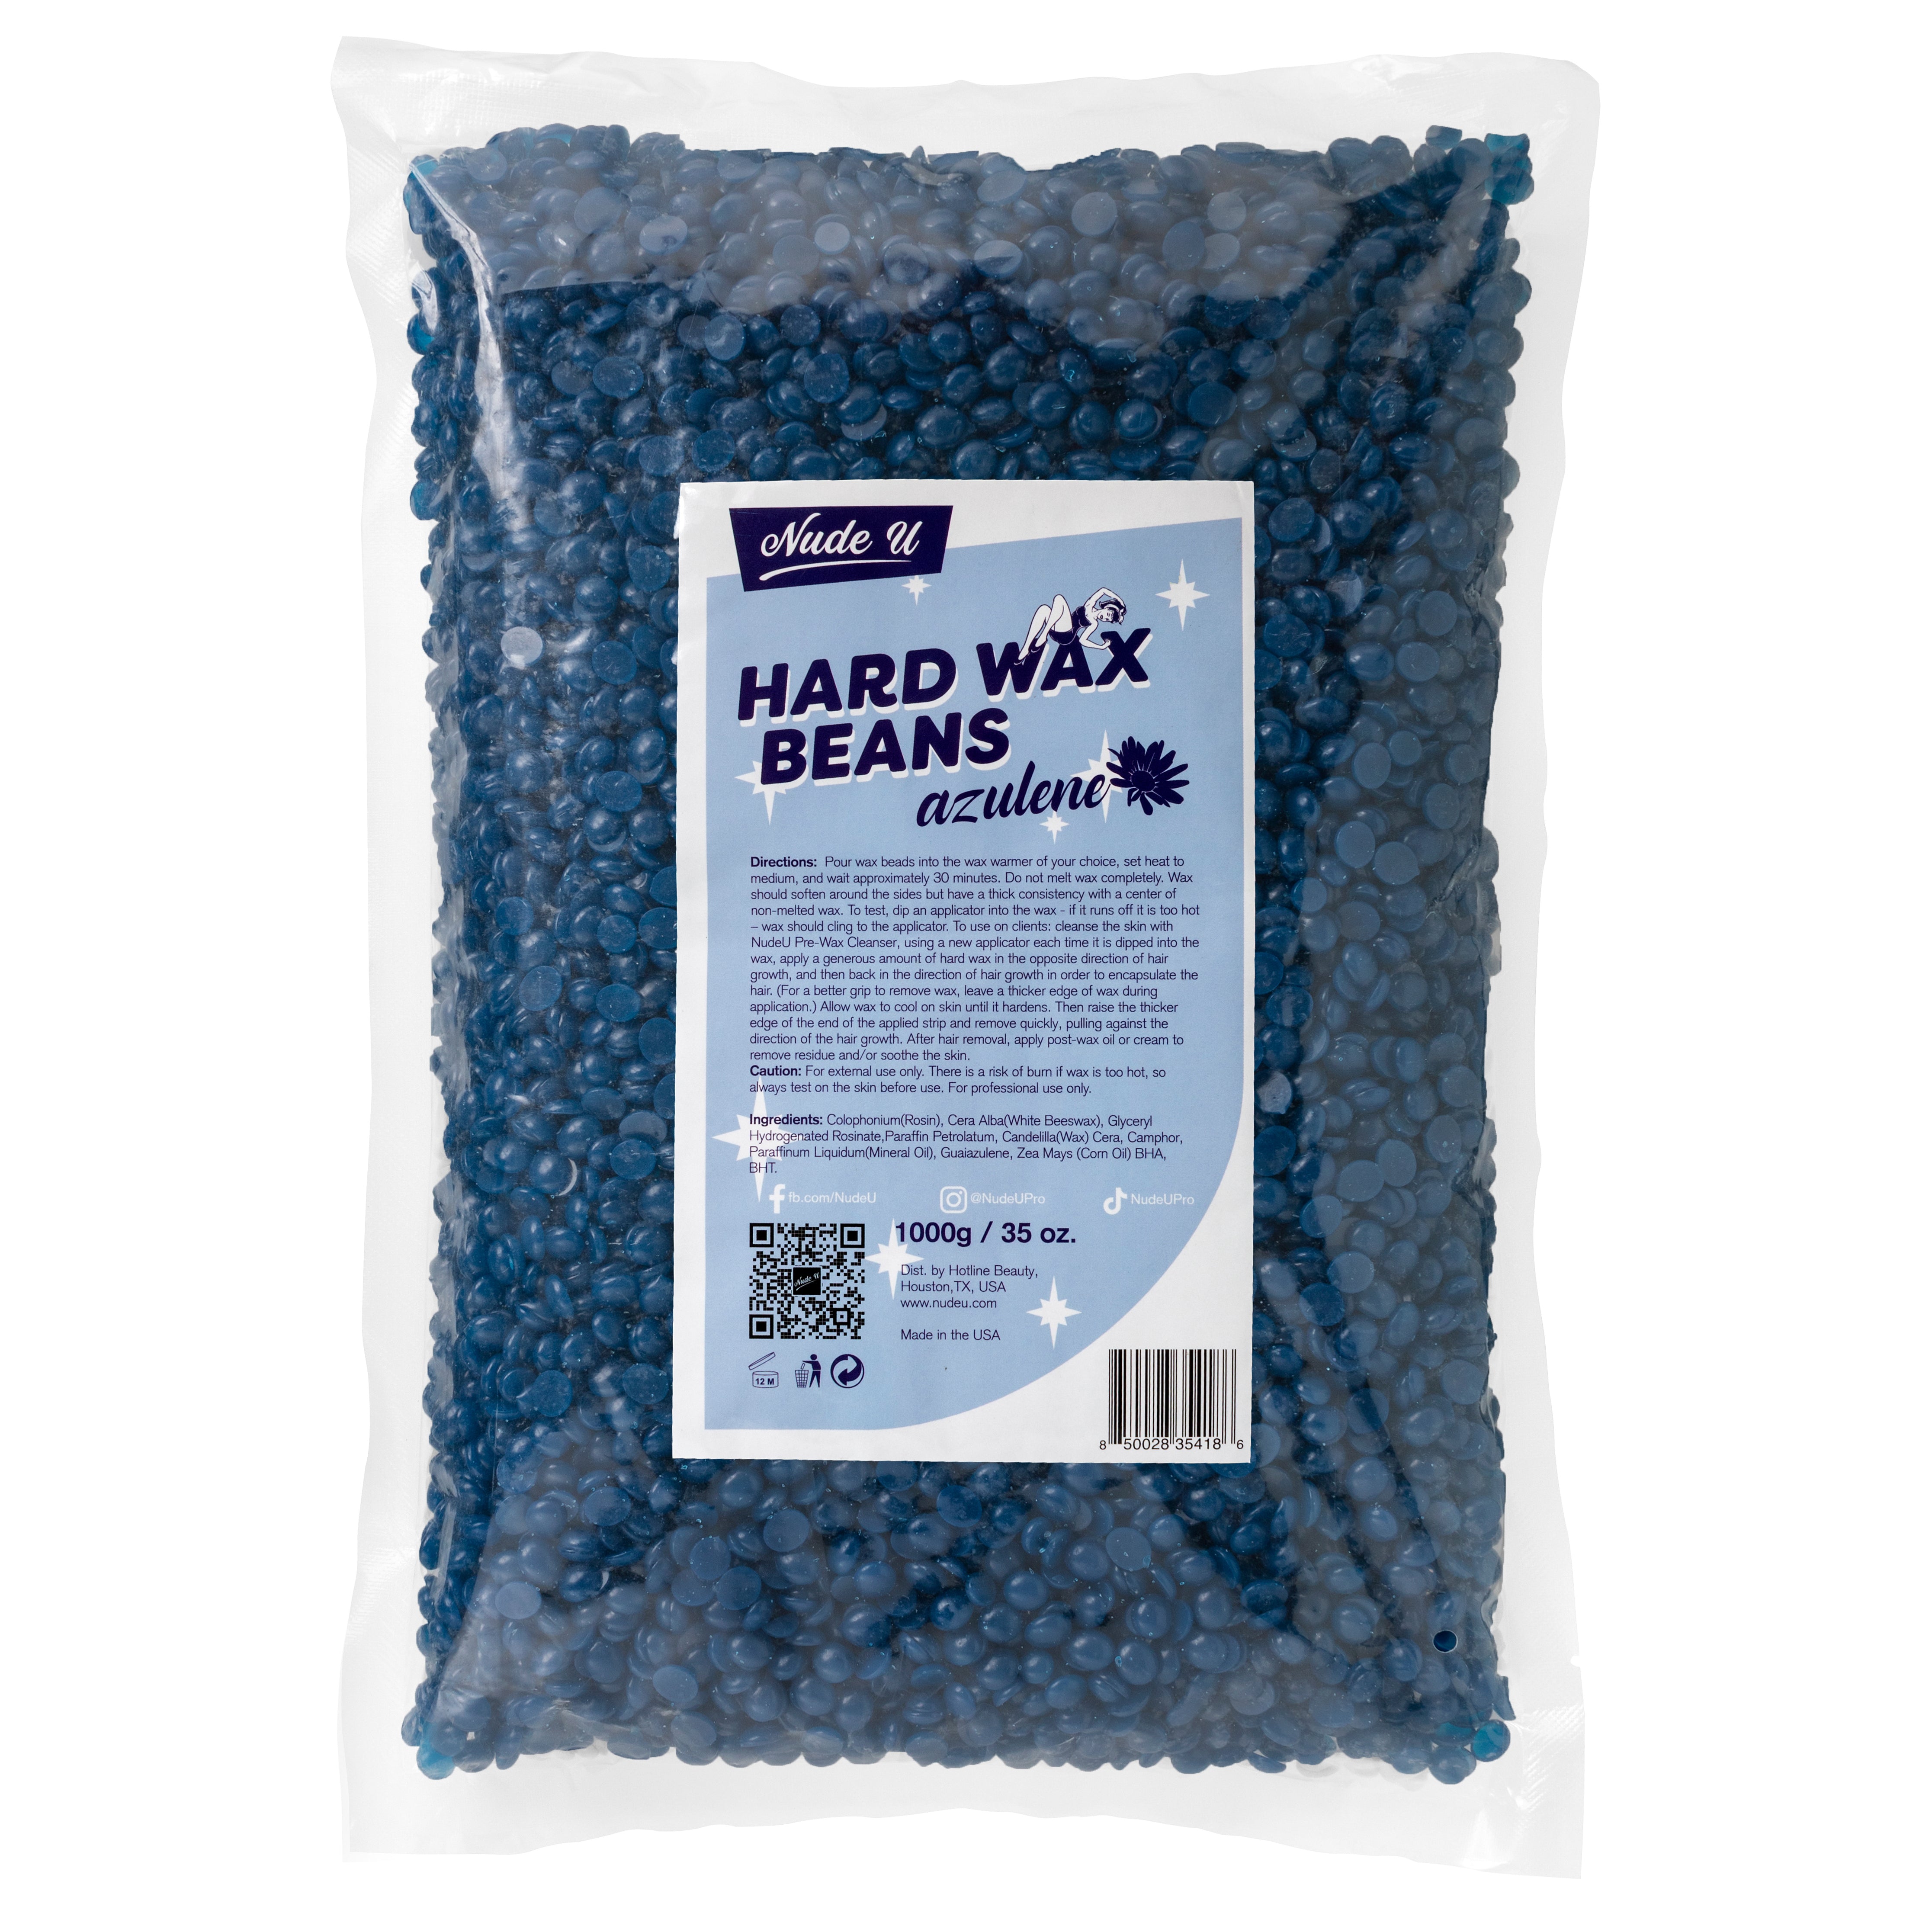 Azulene hard wax beans